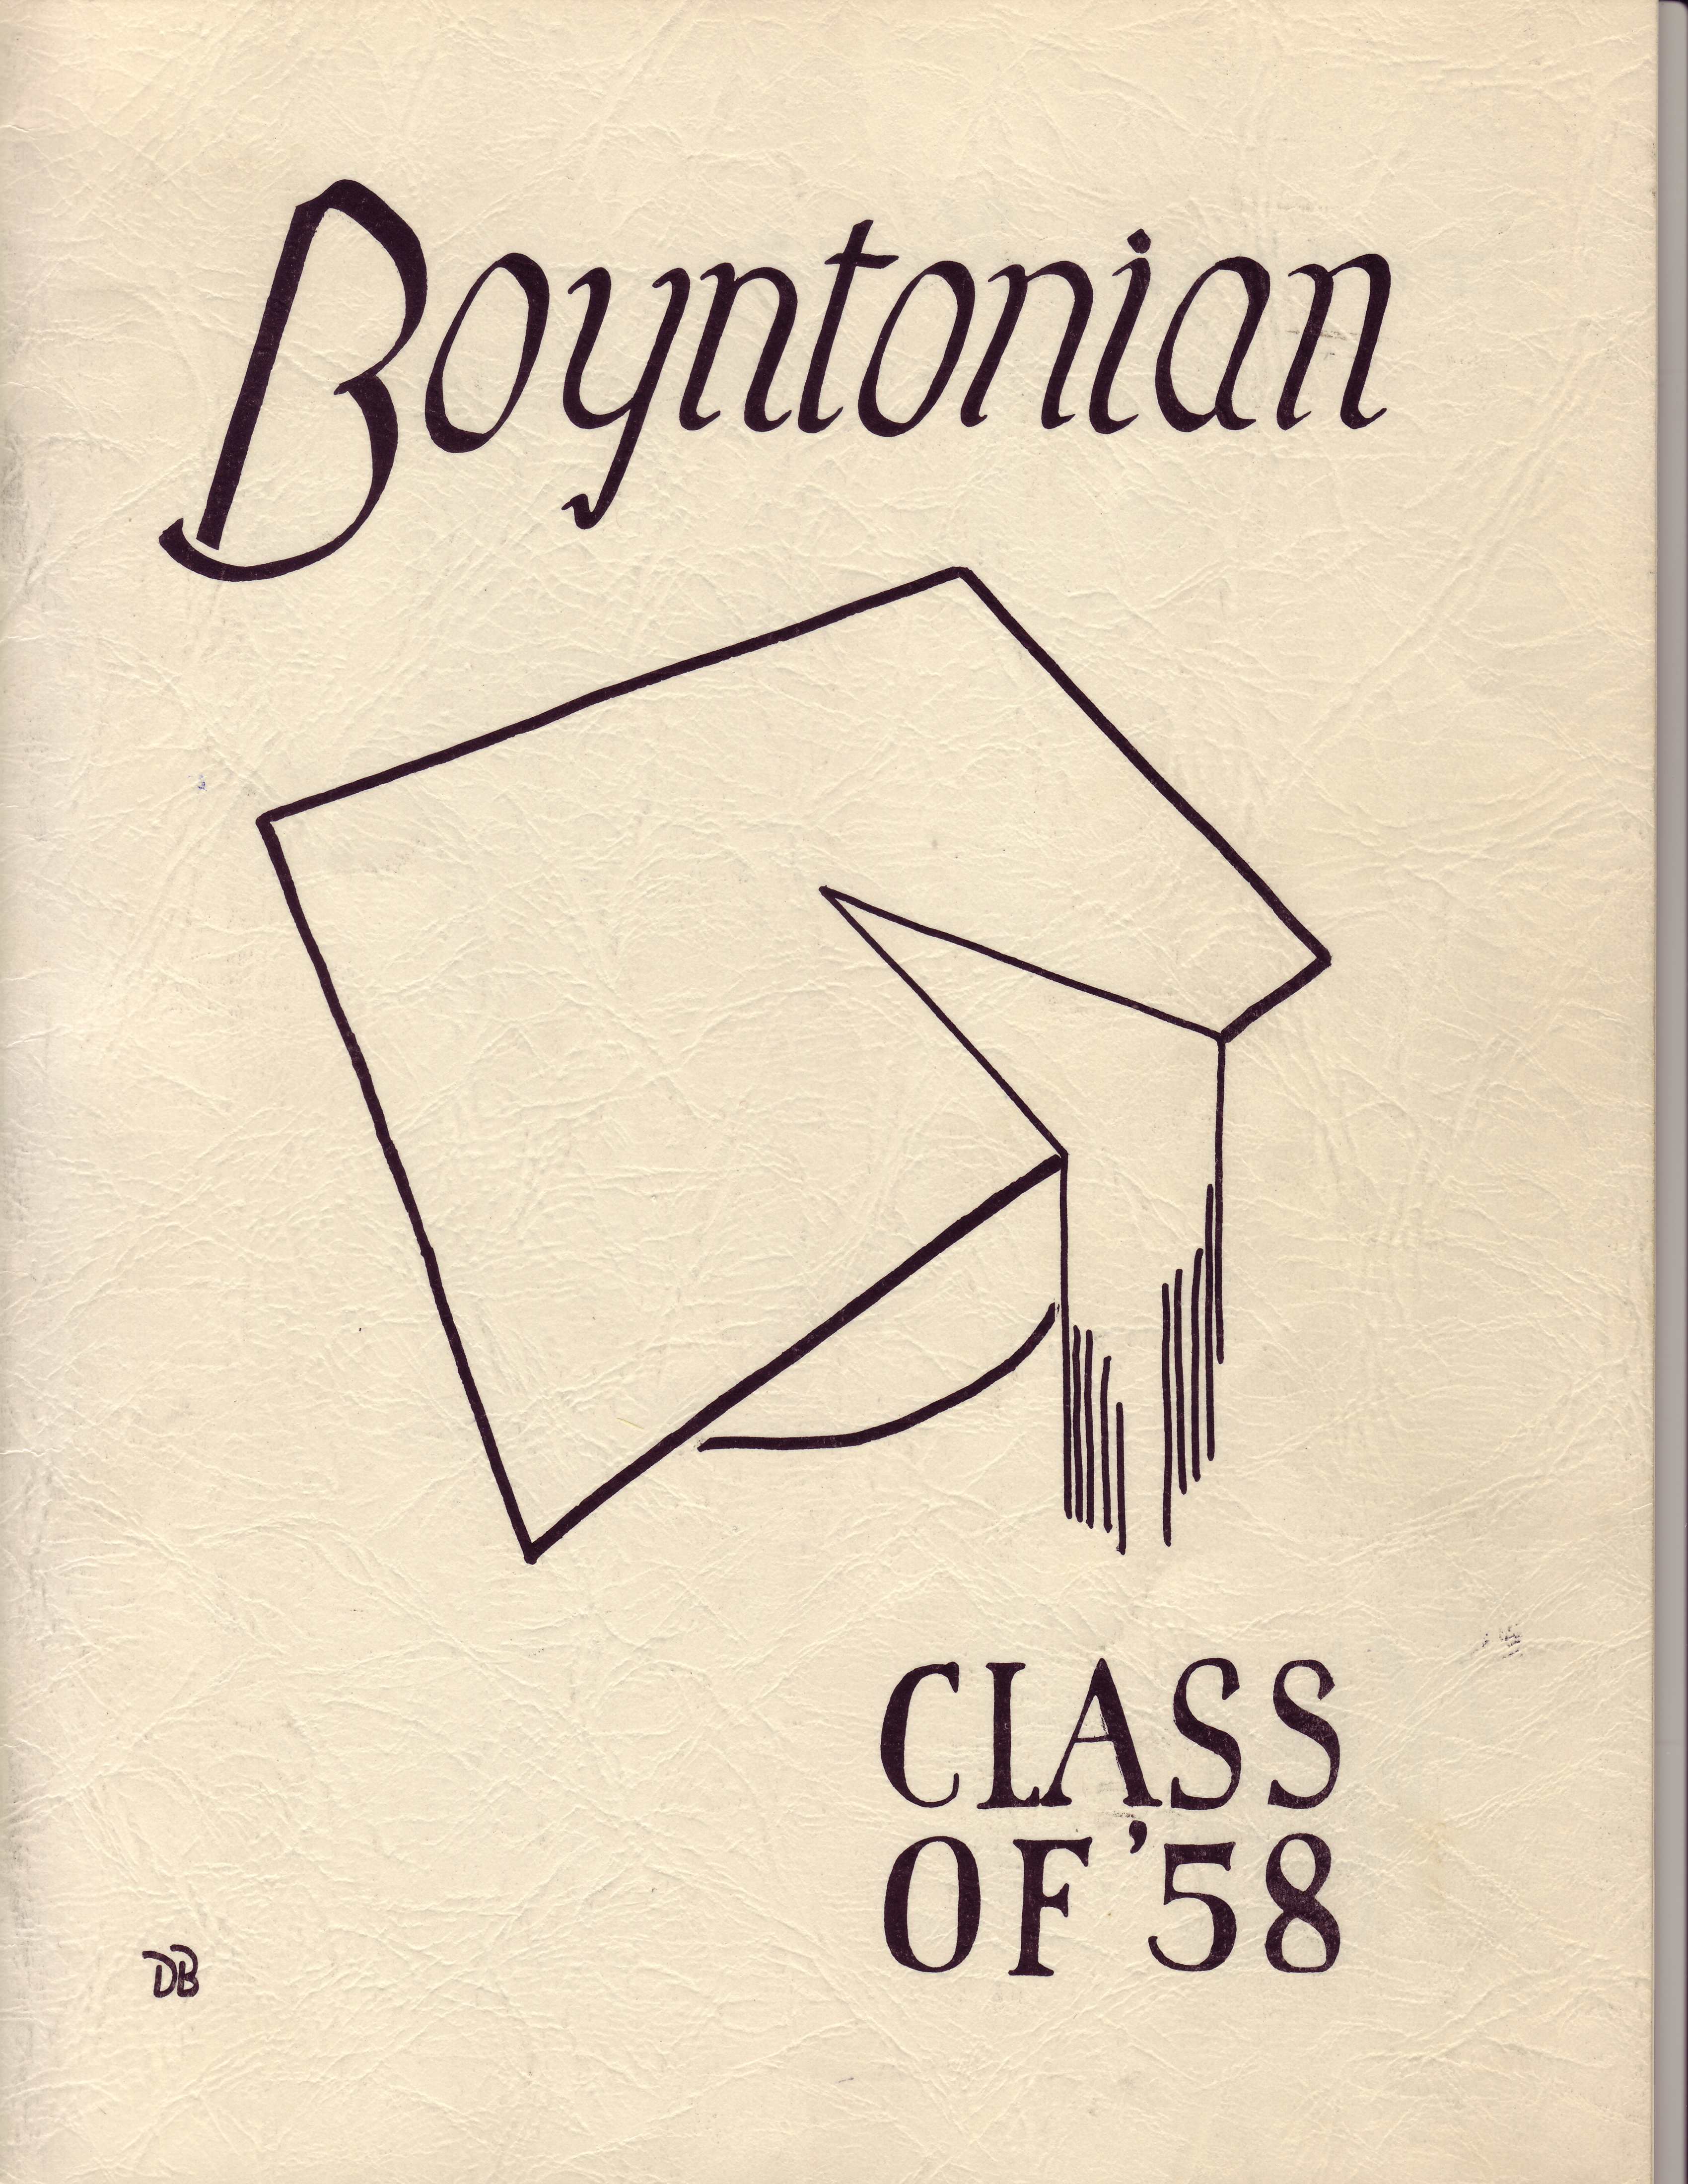 The 1958 Boyntonian Cover